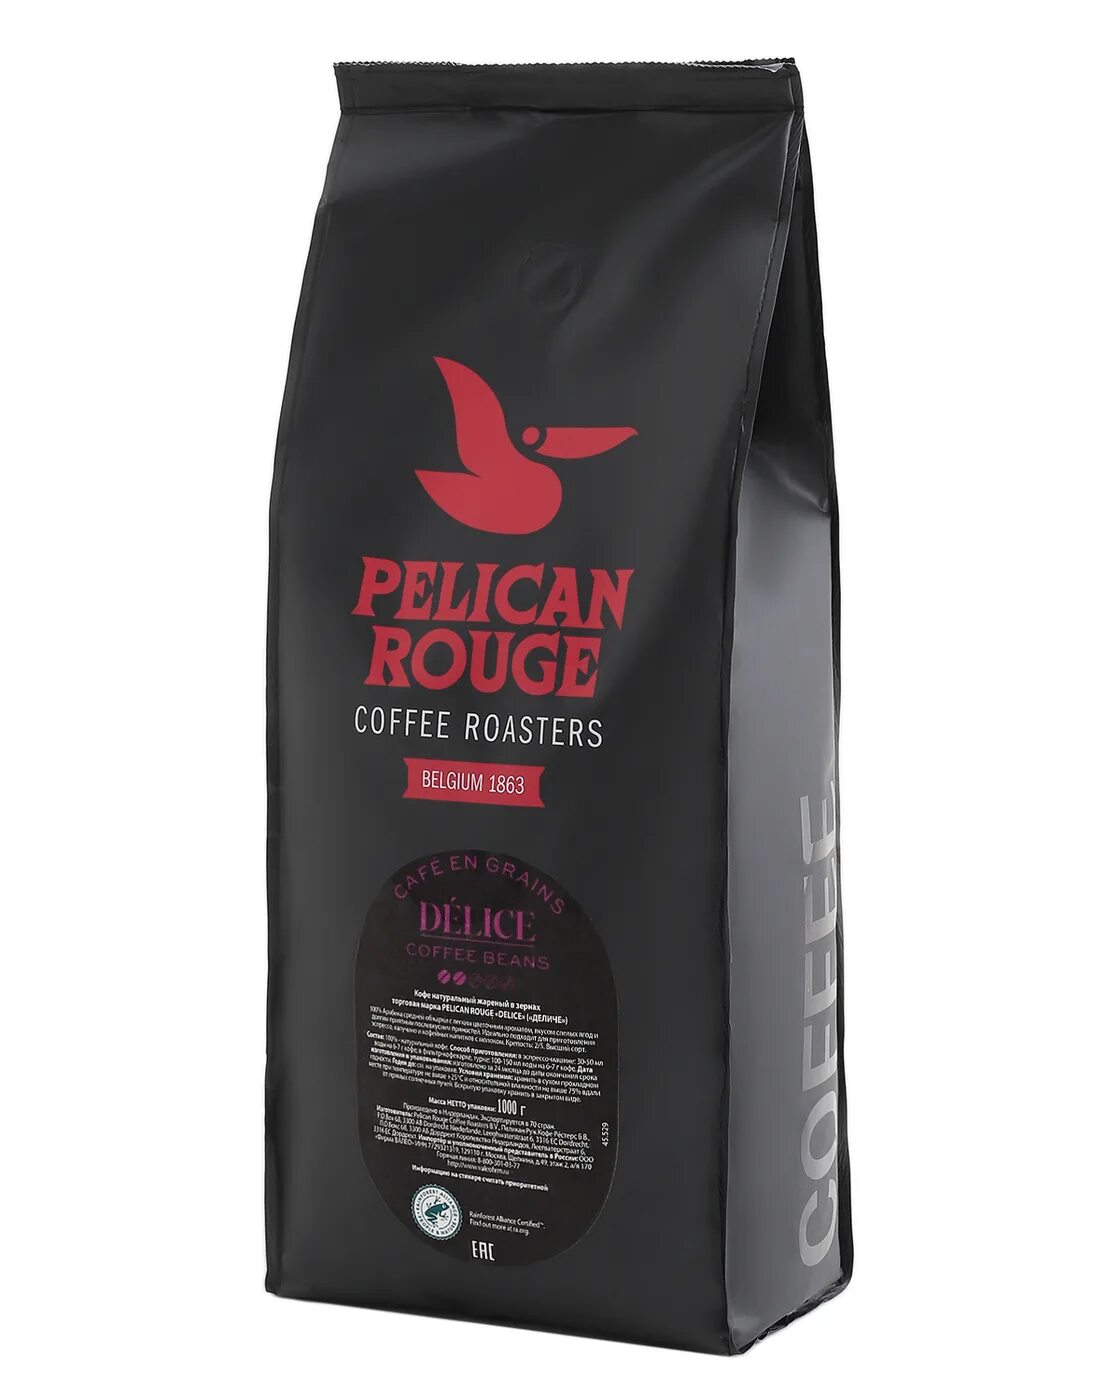 Кофе в зернах купить недорого 1 кг. Кофе в зернах Pelican rouge Delice. Кофе в зернах Pelican rouge Evaristo. Кофе в зернах Pelican rouge Delice 1 кг. Кофе в зернах Pelican rouge Evaristo, 1 кг.